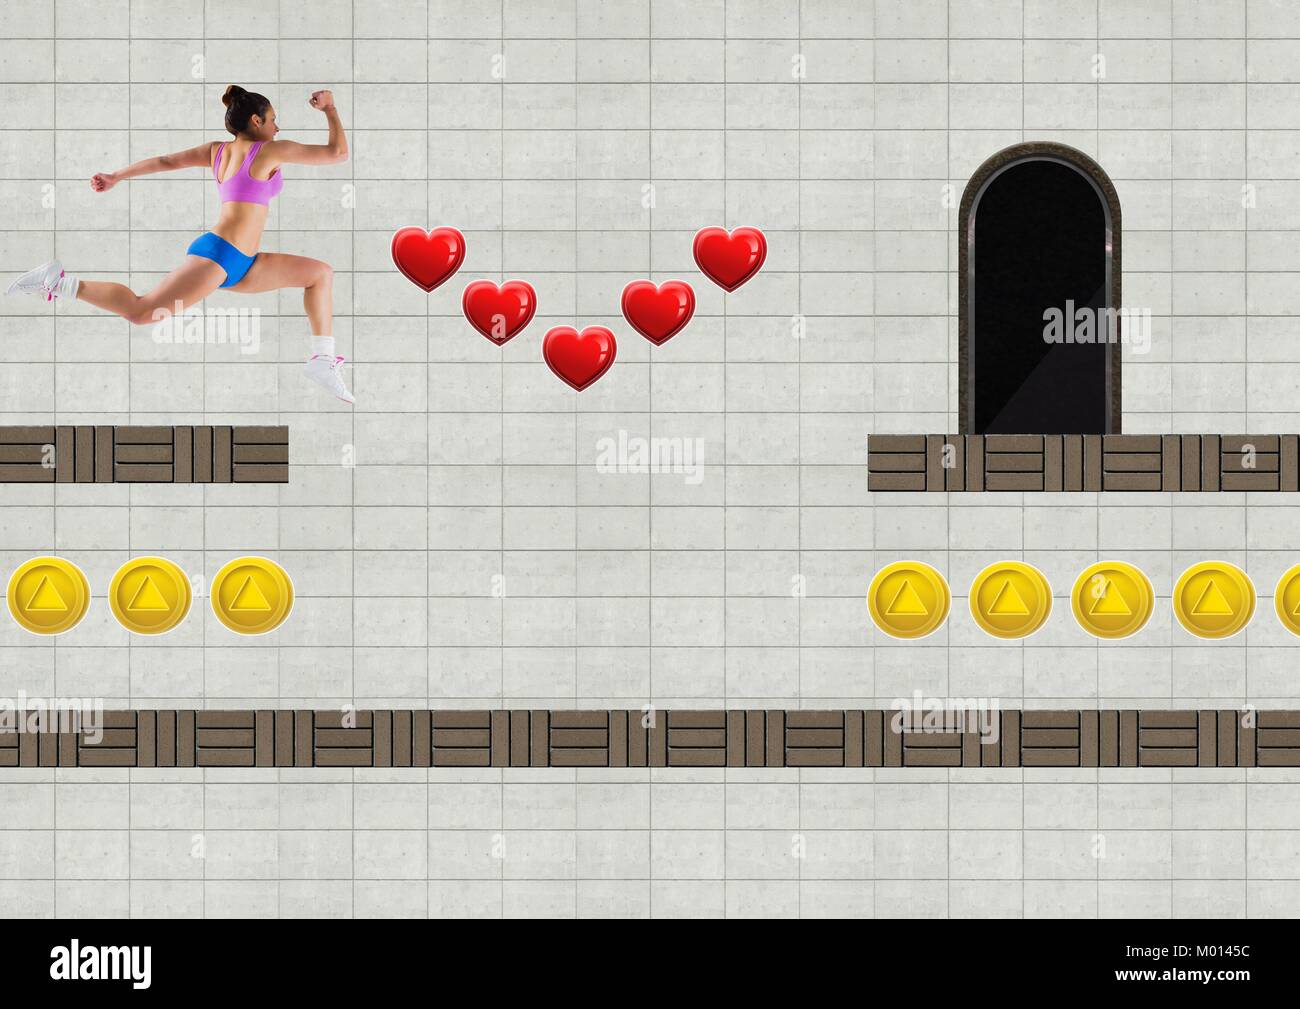 Athletische Frau in Computer Game Level mit Herzen und Münzen Stockfoto